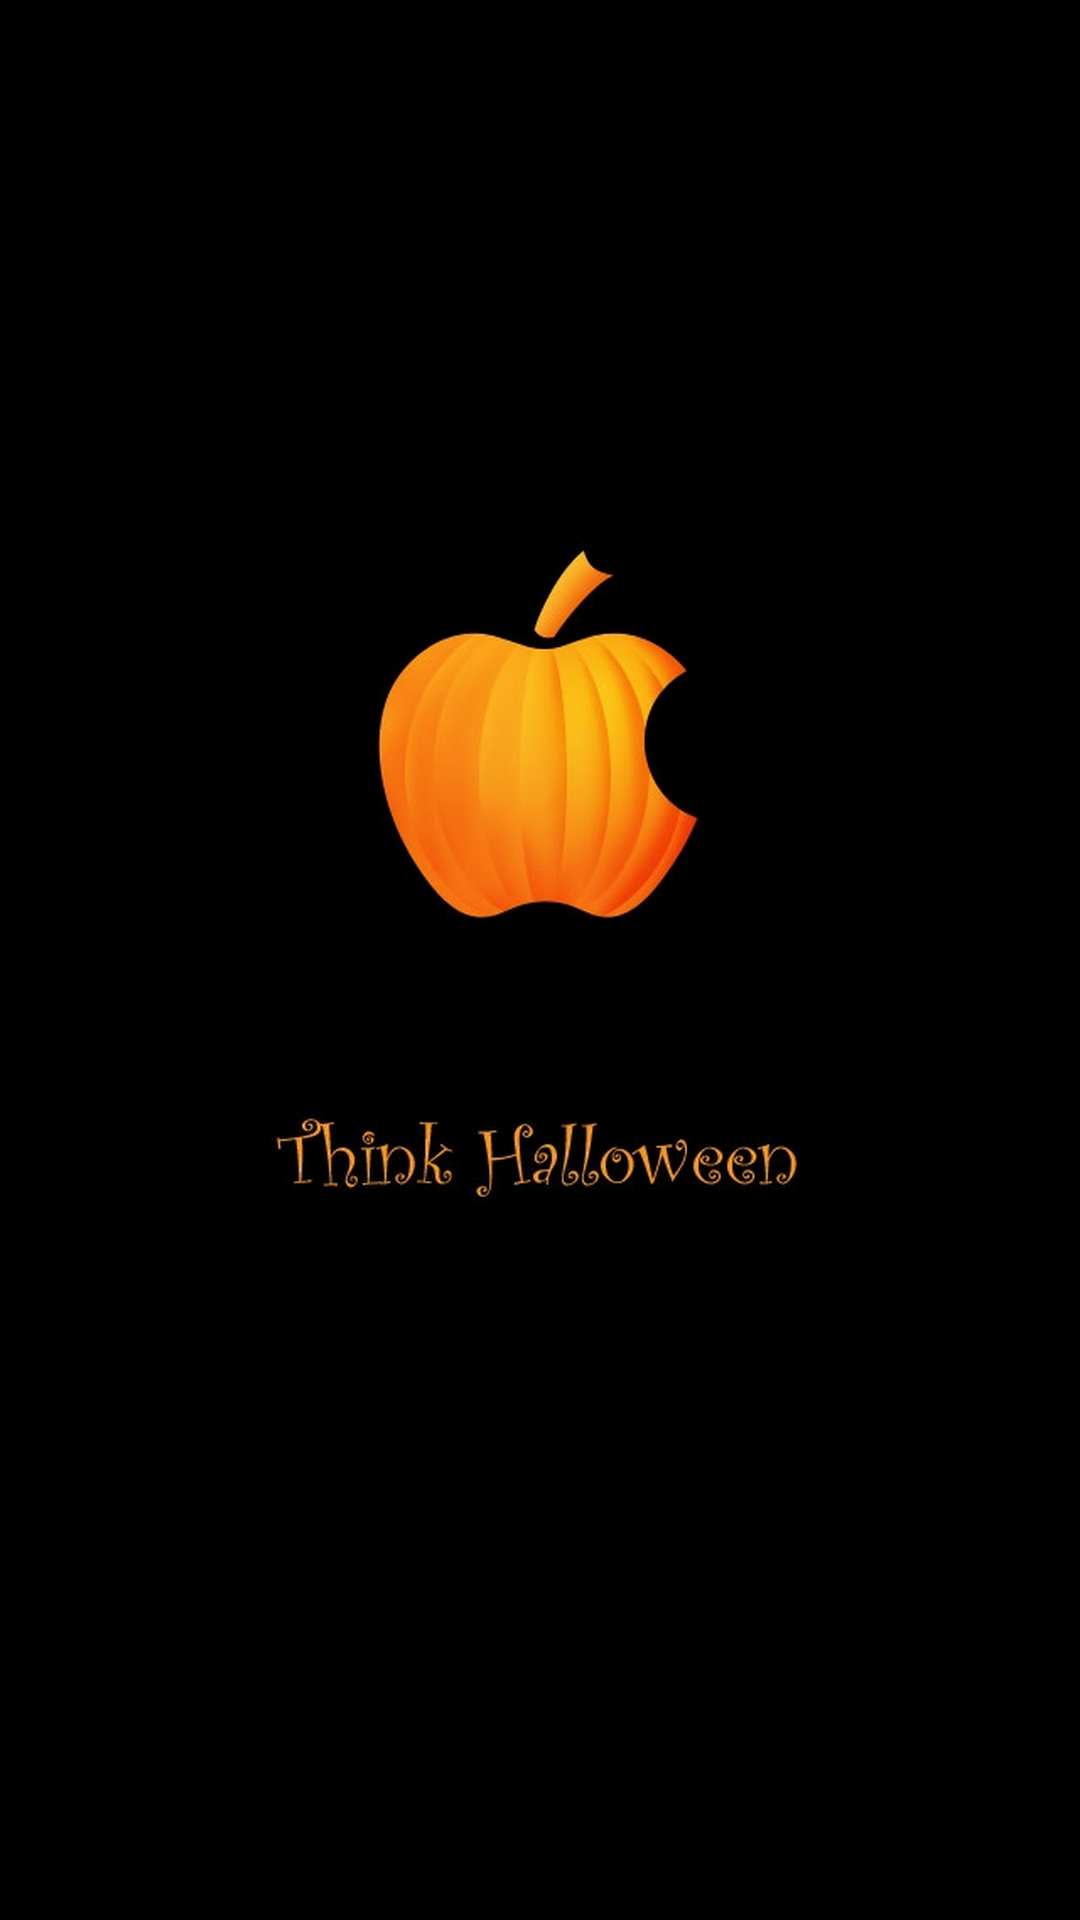 Halloween Apple Logo Iphone Wallpapers